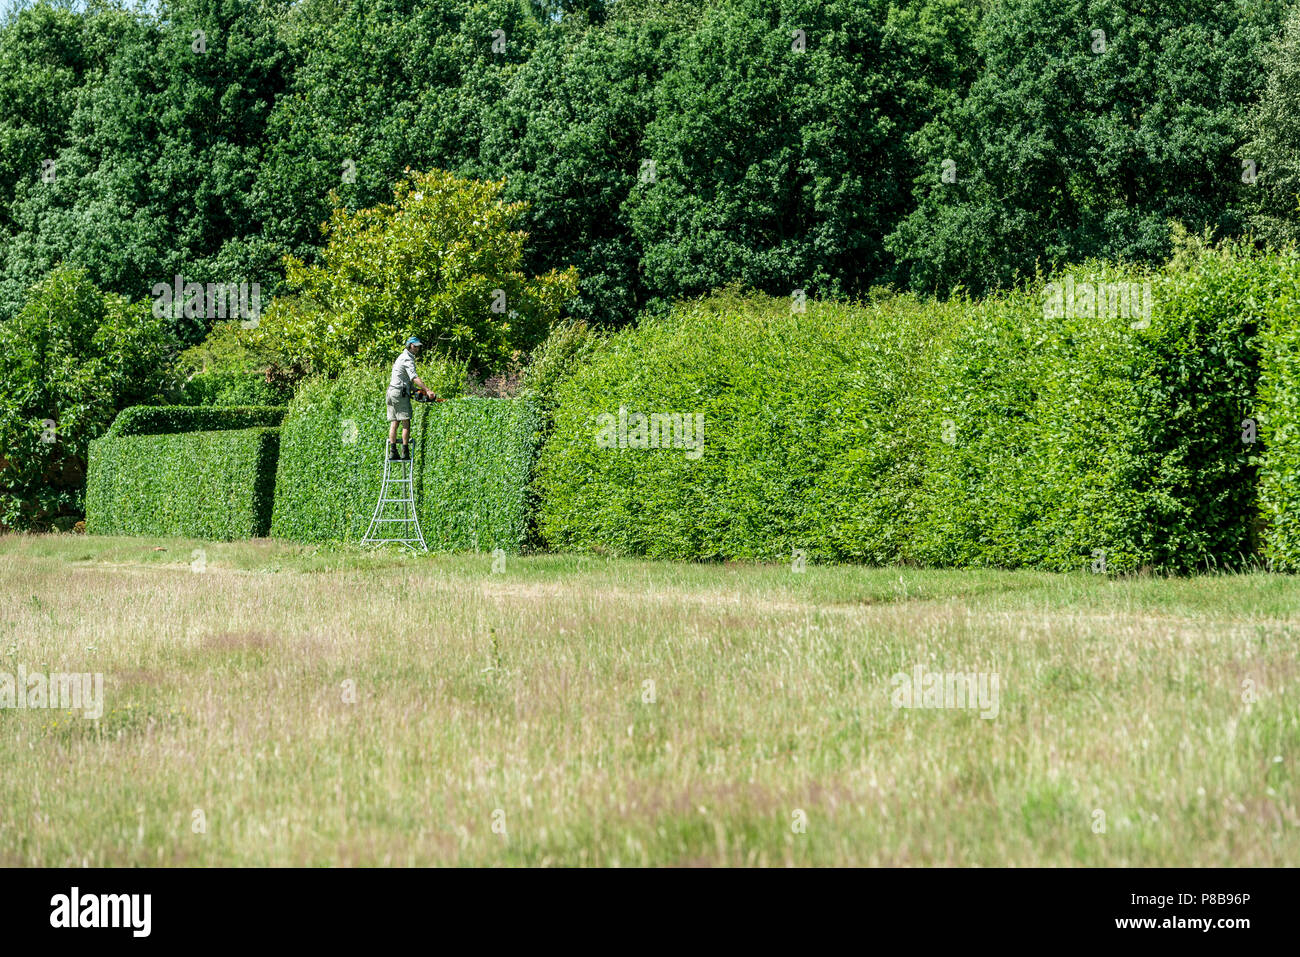 Marchi Hall giardini e Arboretum, taglio la lunga siepe che confina con il giardino murato. Powered hedg rifilatura. Foto Stock